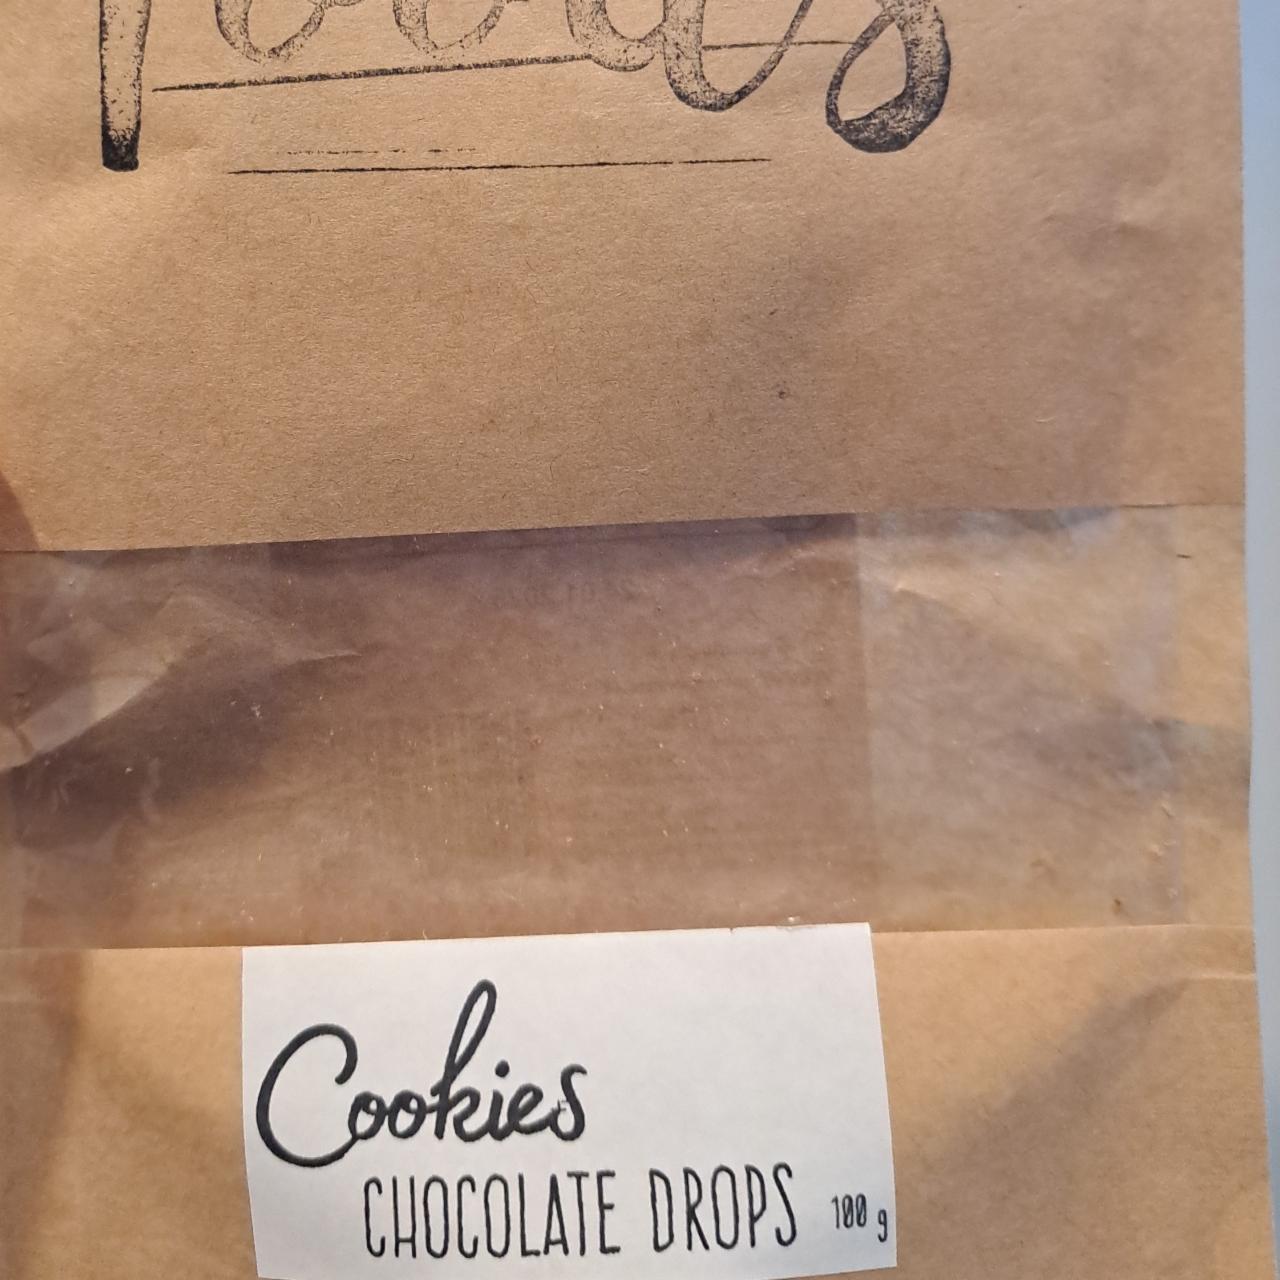 Fotografie - Cookies Chocolate Drops Goodie